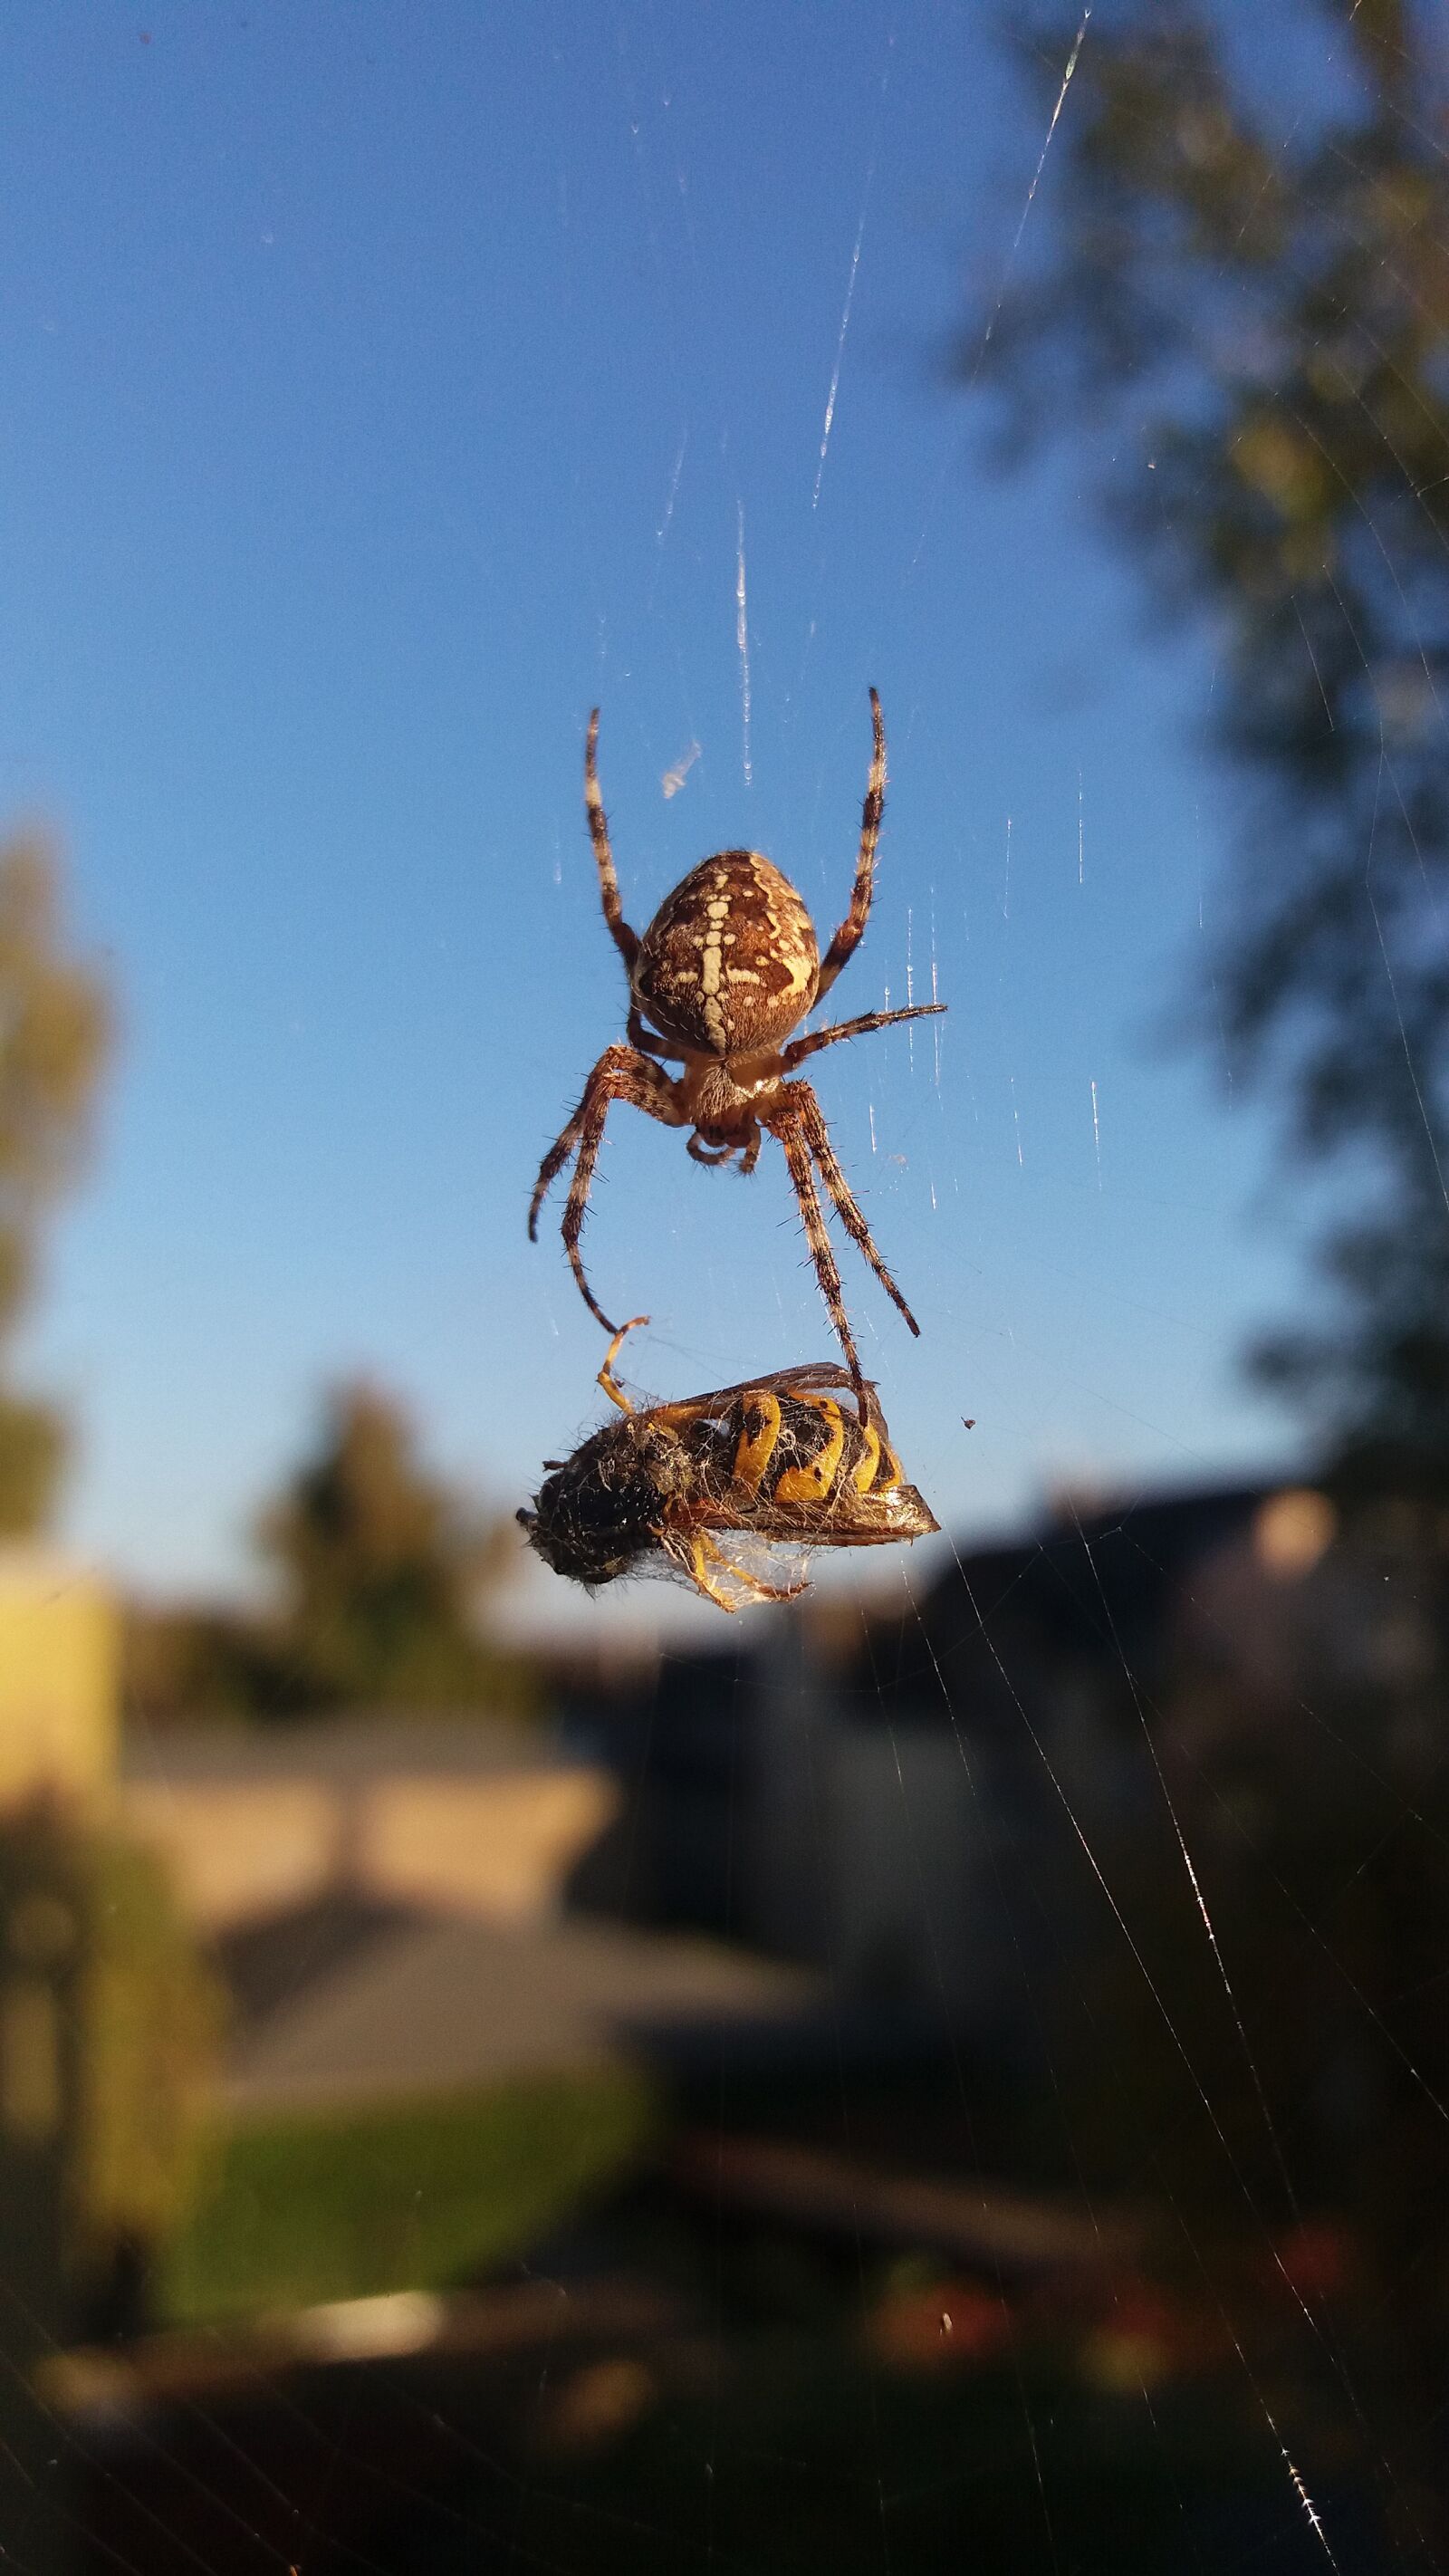 Samsung Galaxy J5 sample photo. Wasp, spider, cobweb photography